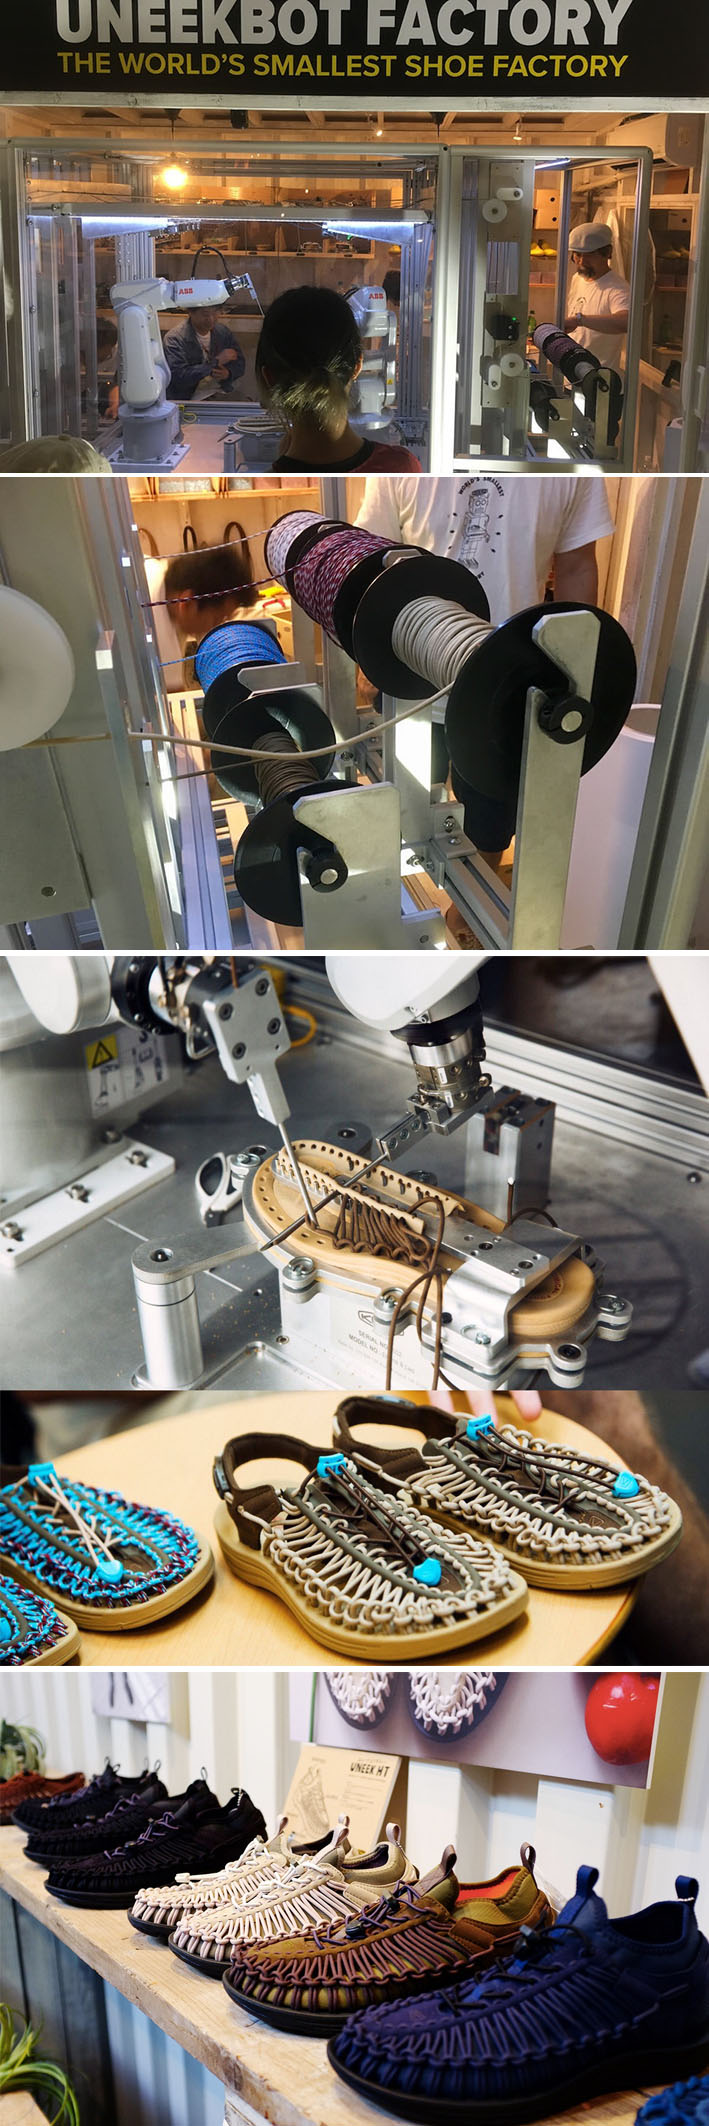 Na loja do futuro Uneekbot Factory, dois robôs fabricam sapatos sob demanda em seis minutos stylo urbano